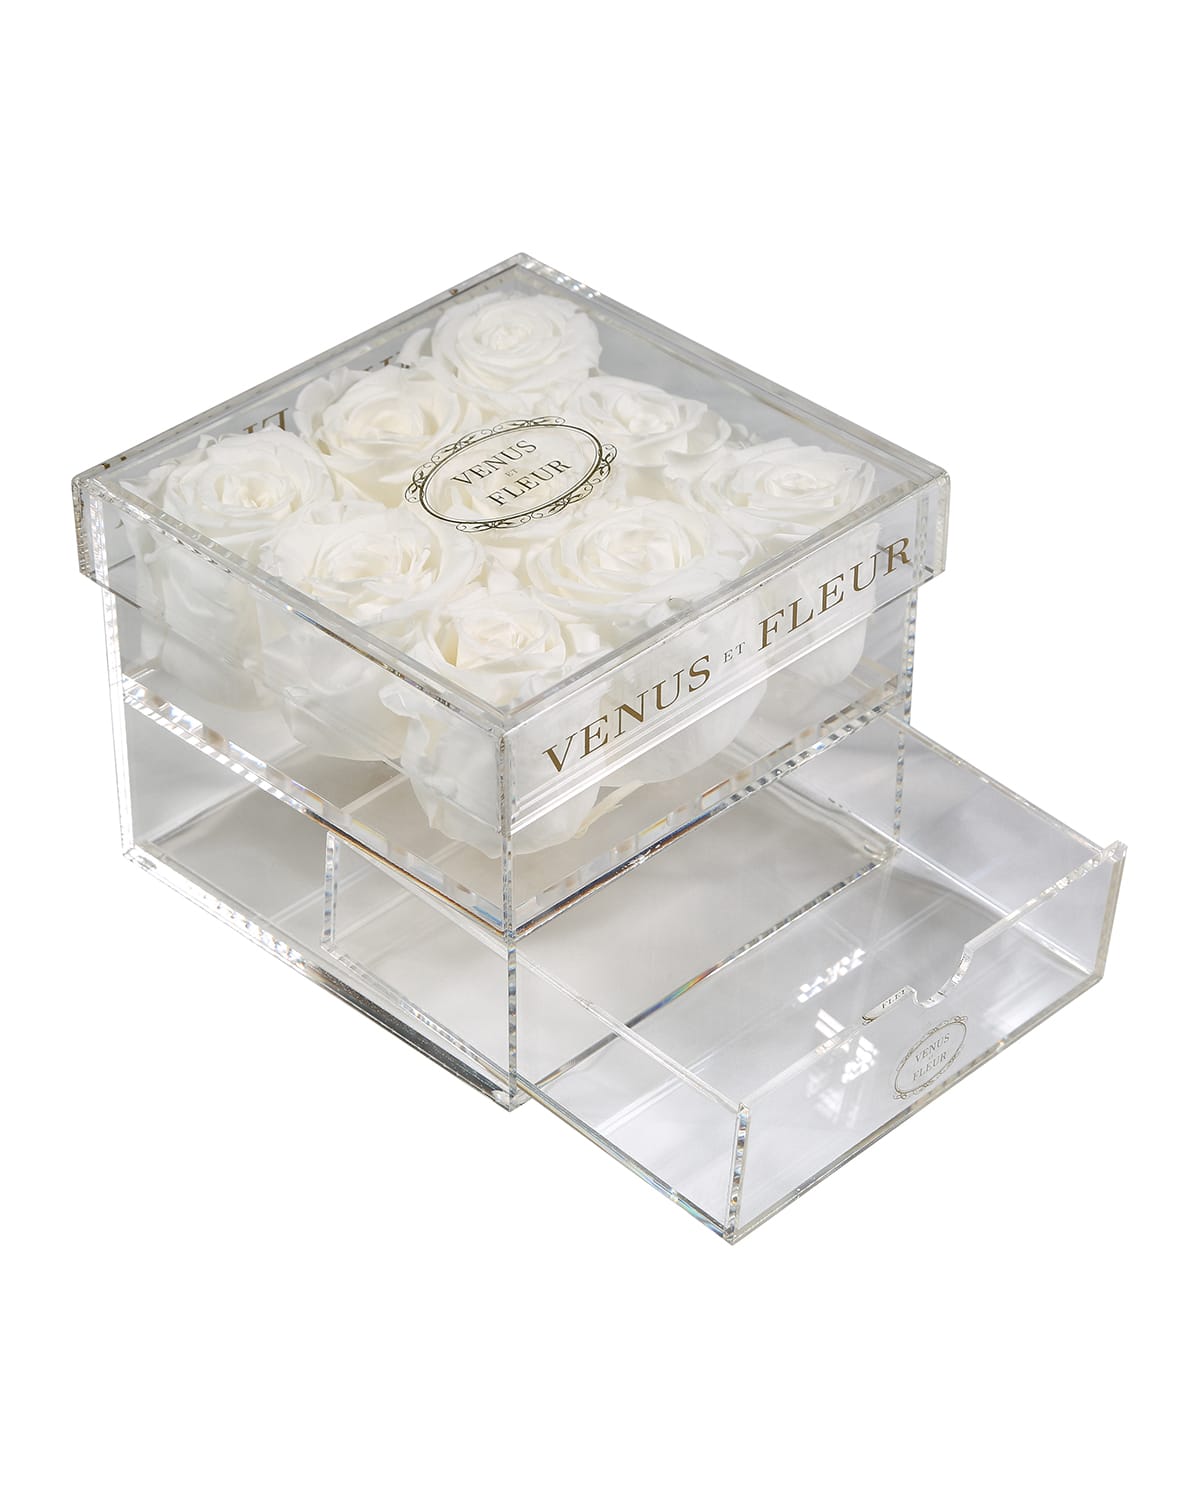 Venus Et Fleur Le Clair Neuf Rose Box In White